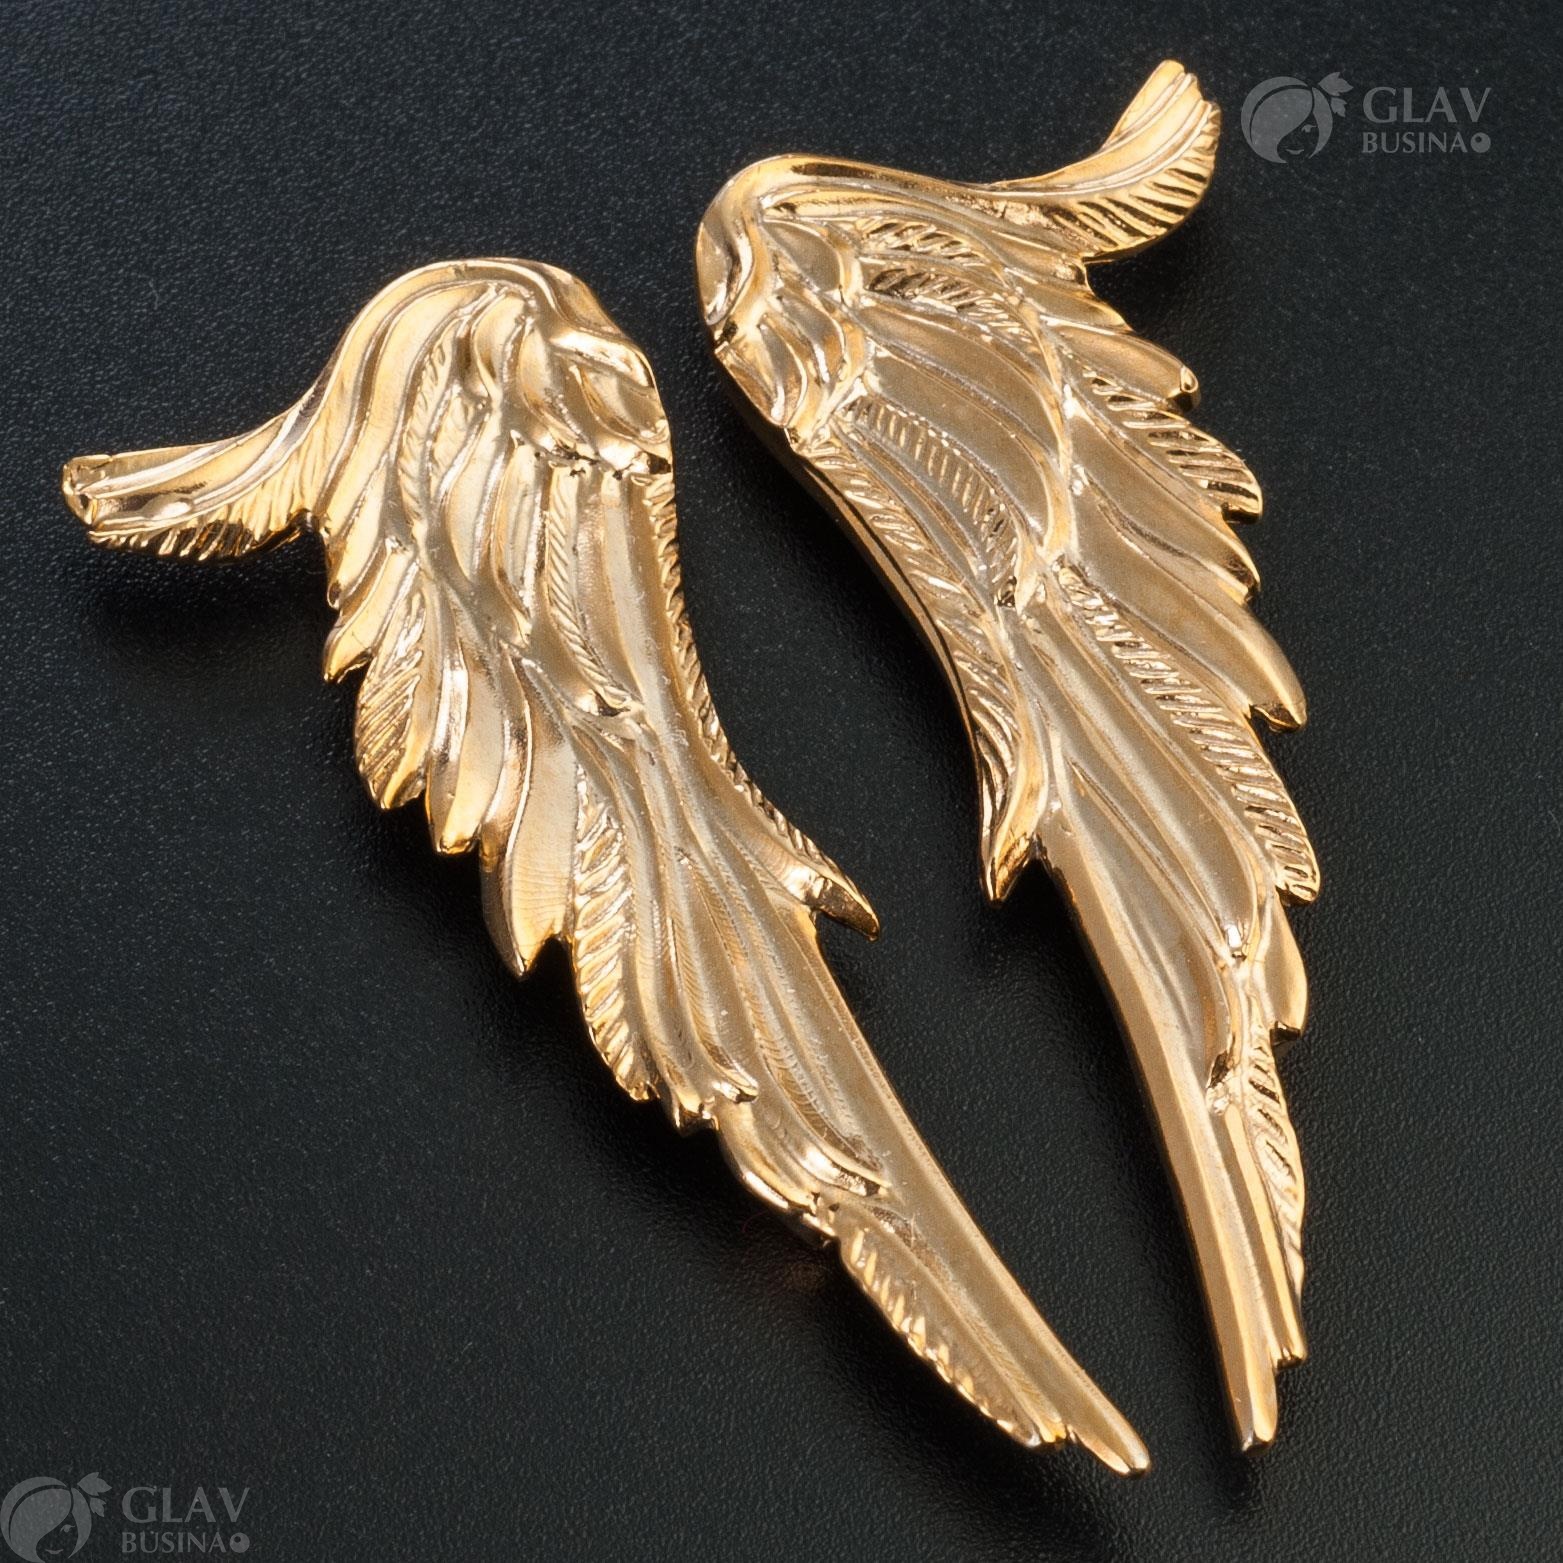 Парные кулоны "Крылья ангела" из латуни с золотым покрытием, размером 50х20мм, отверстия 2/1 - 2мм, эксклюзивные ручной работы.